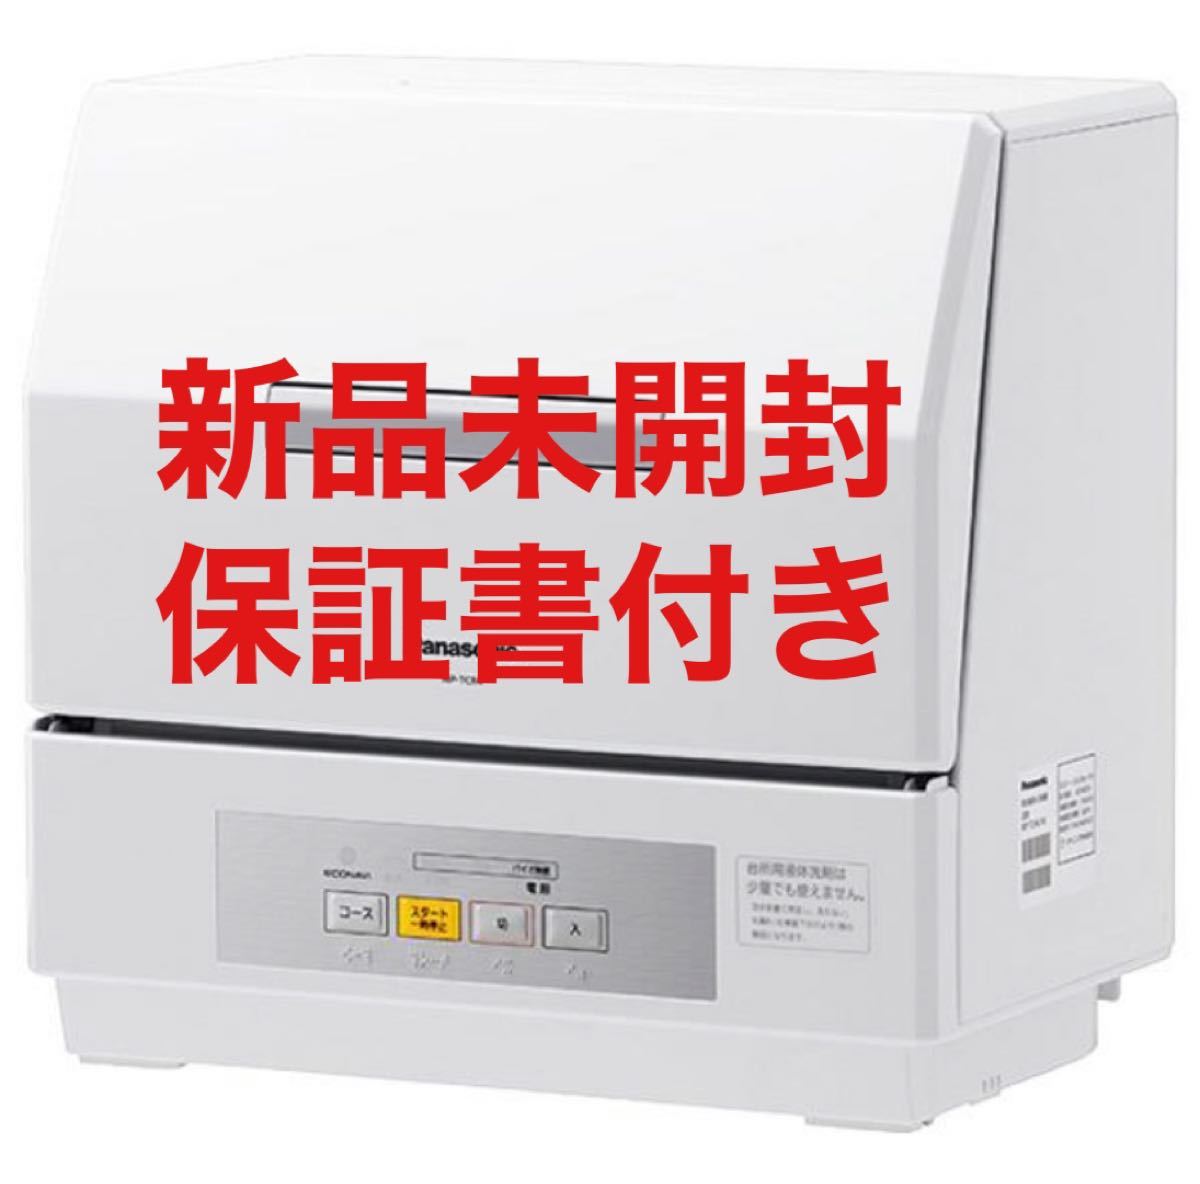 食器洗い乾燥機 NP-TCR4-W パナソニック 食器洗い乾燥機 プチ食洗機